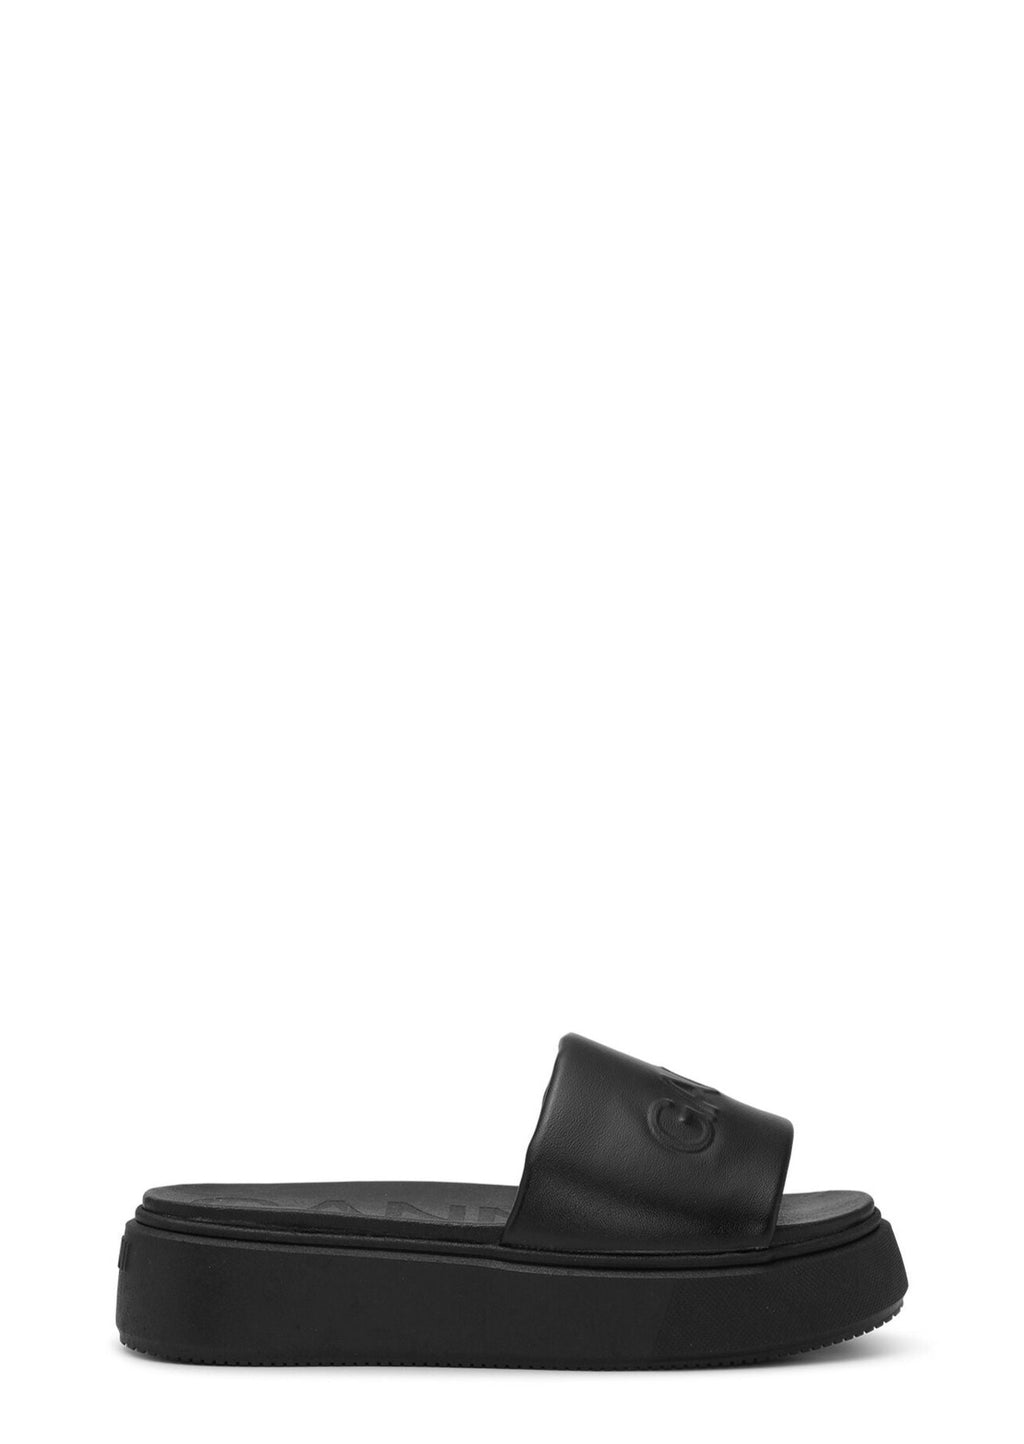 VEGEA™ Slide Flatform Sandals in Black